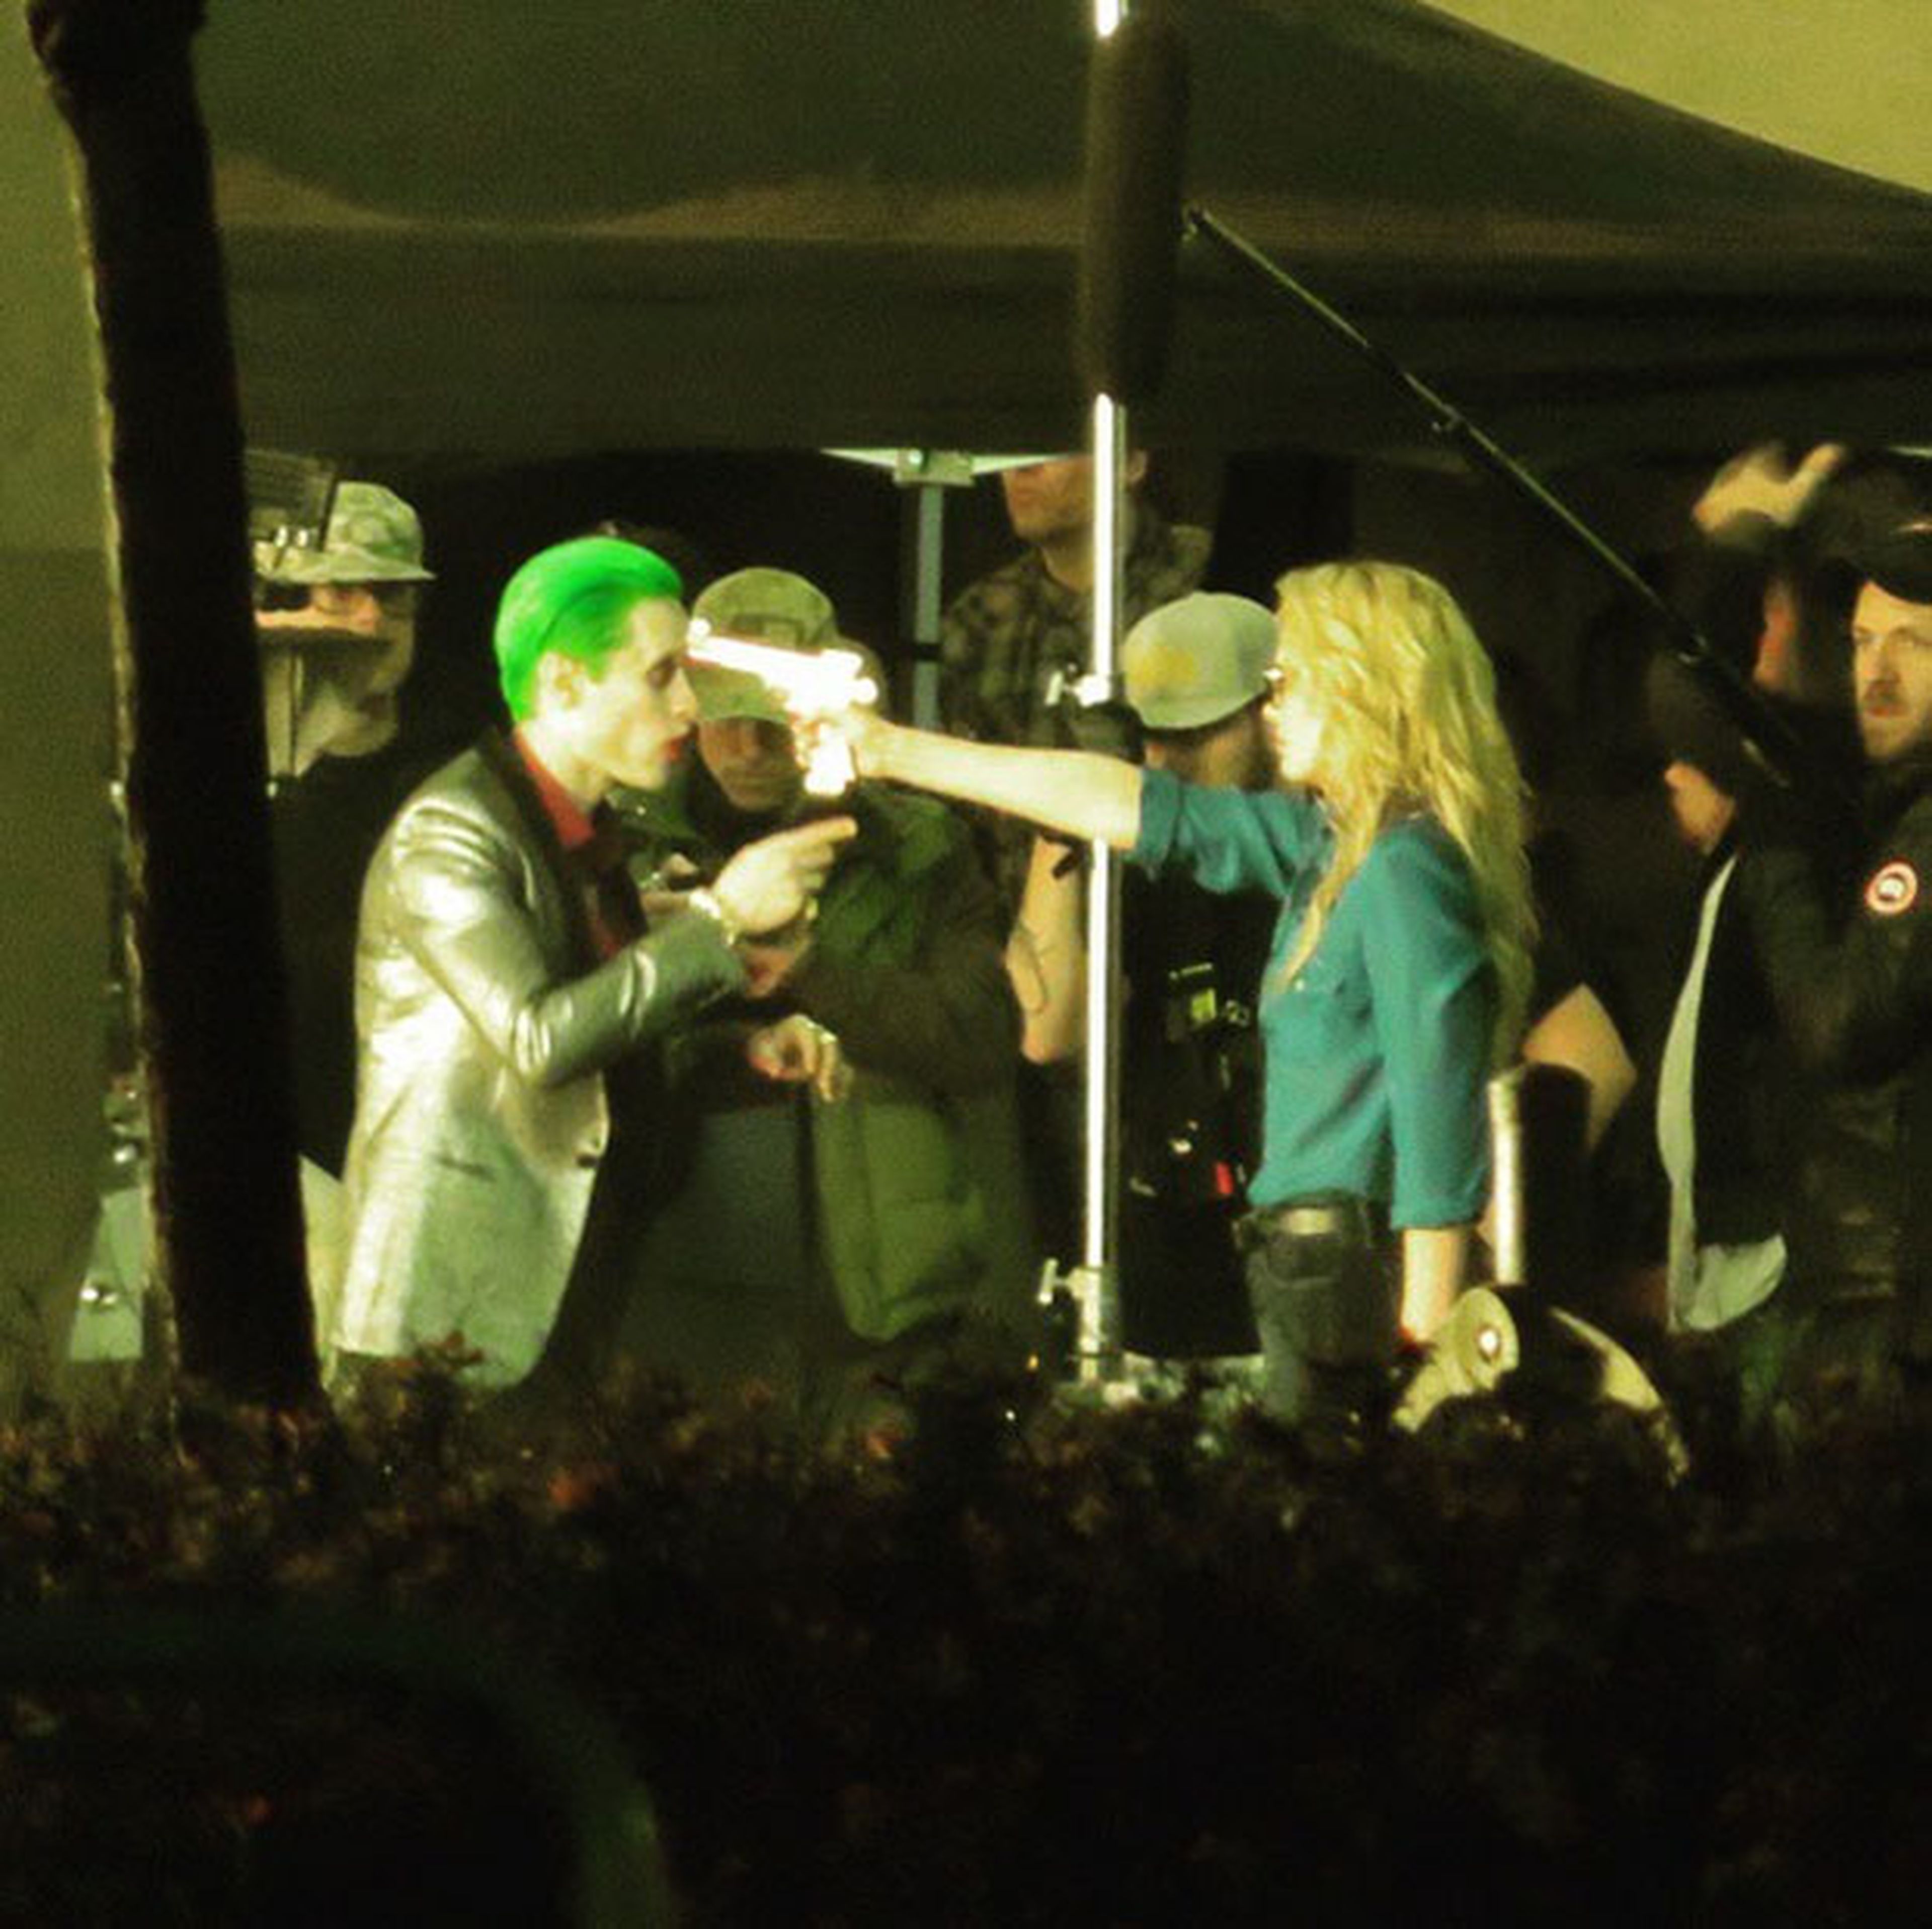 Escuadrón Suicida: Los Joker de Jared Leto y Harley Quinn de Margott Robbie en detalle en nuevas fotos filtradas